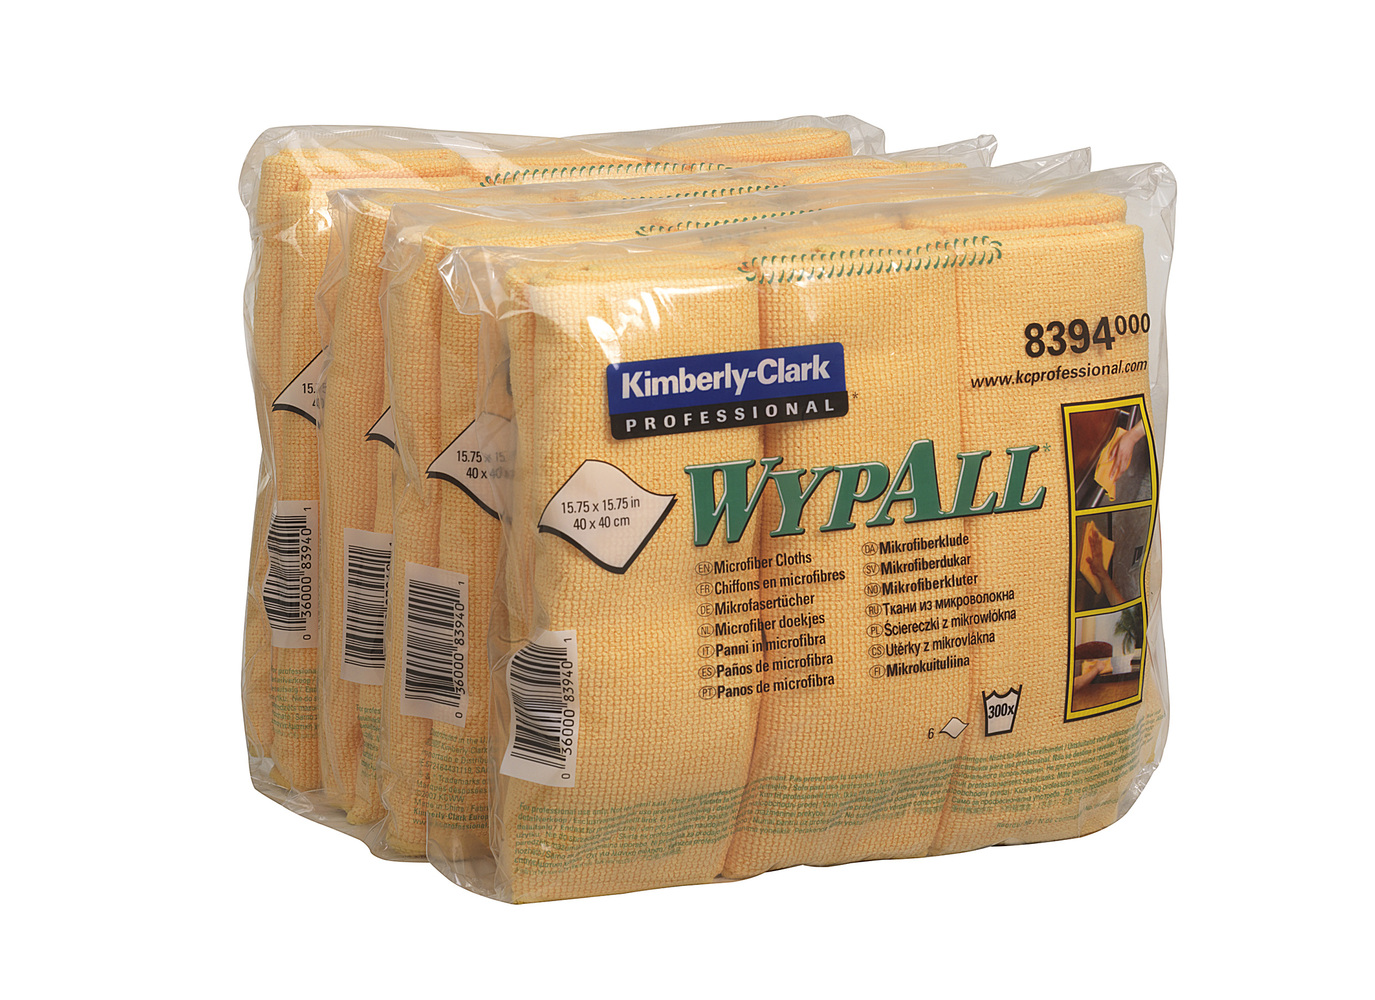 WypAll® Mikrofasertücher 8394 - 6 gelbe, 40 x 40 cm große Tücher pro Päckchen (Karton enthält 4 Päckchen). - 8394